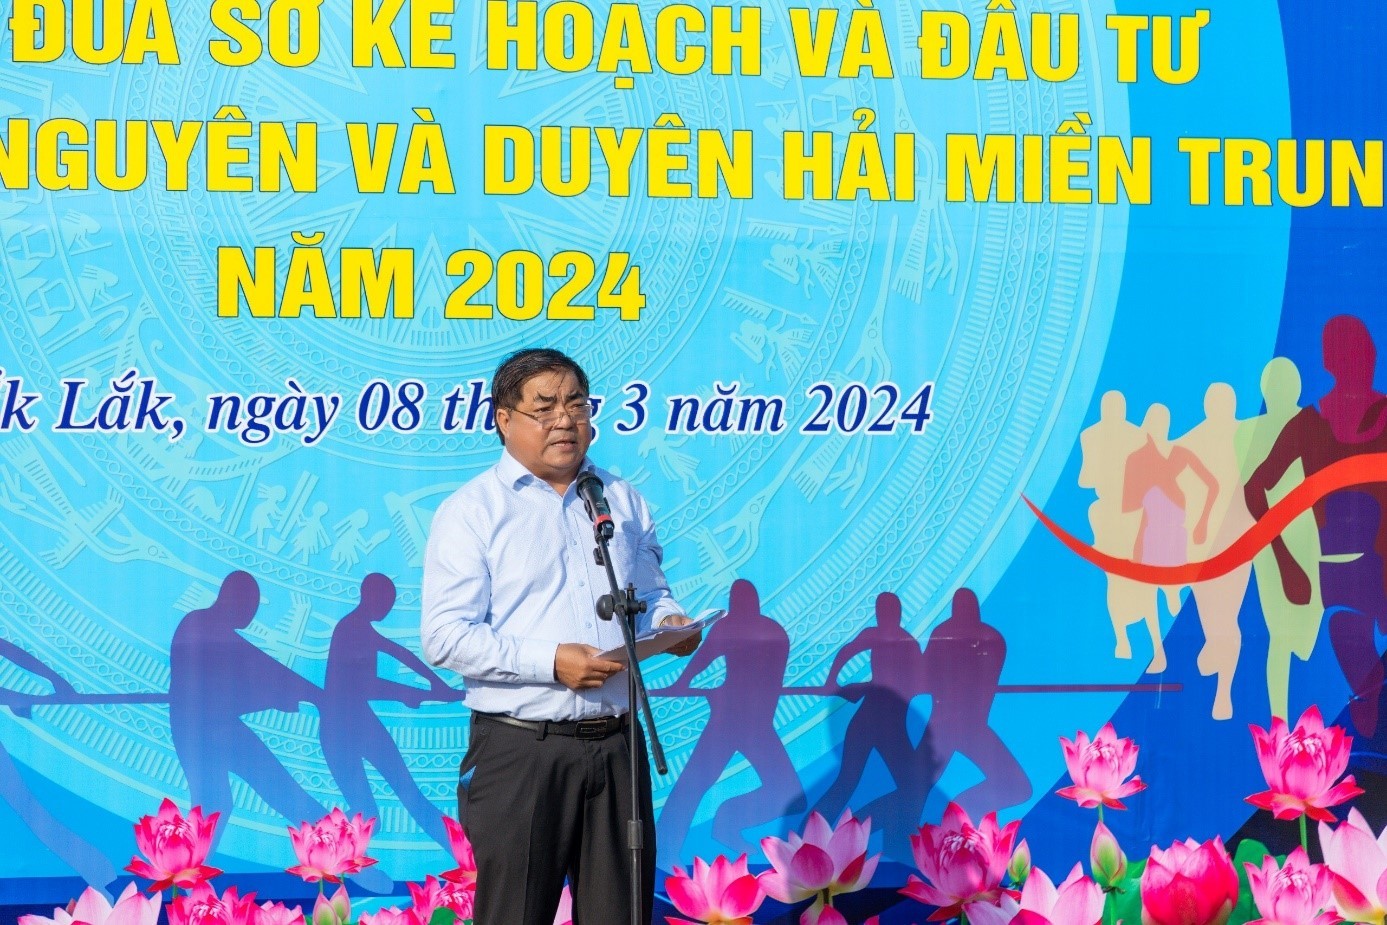 Ông Võ Ngọc Tuyên giám đốc Sở KH&ĐT tỉnh Đắk Lắk phát biểu khai mạc hôi thao